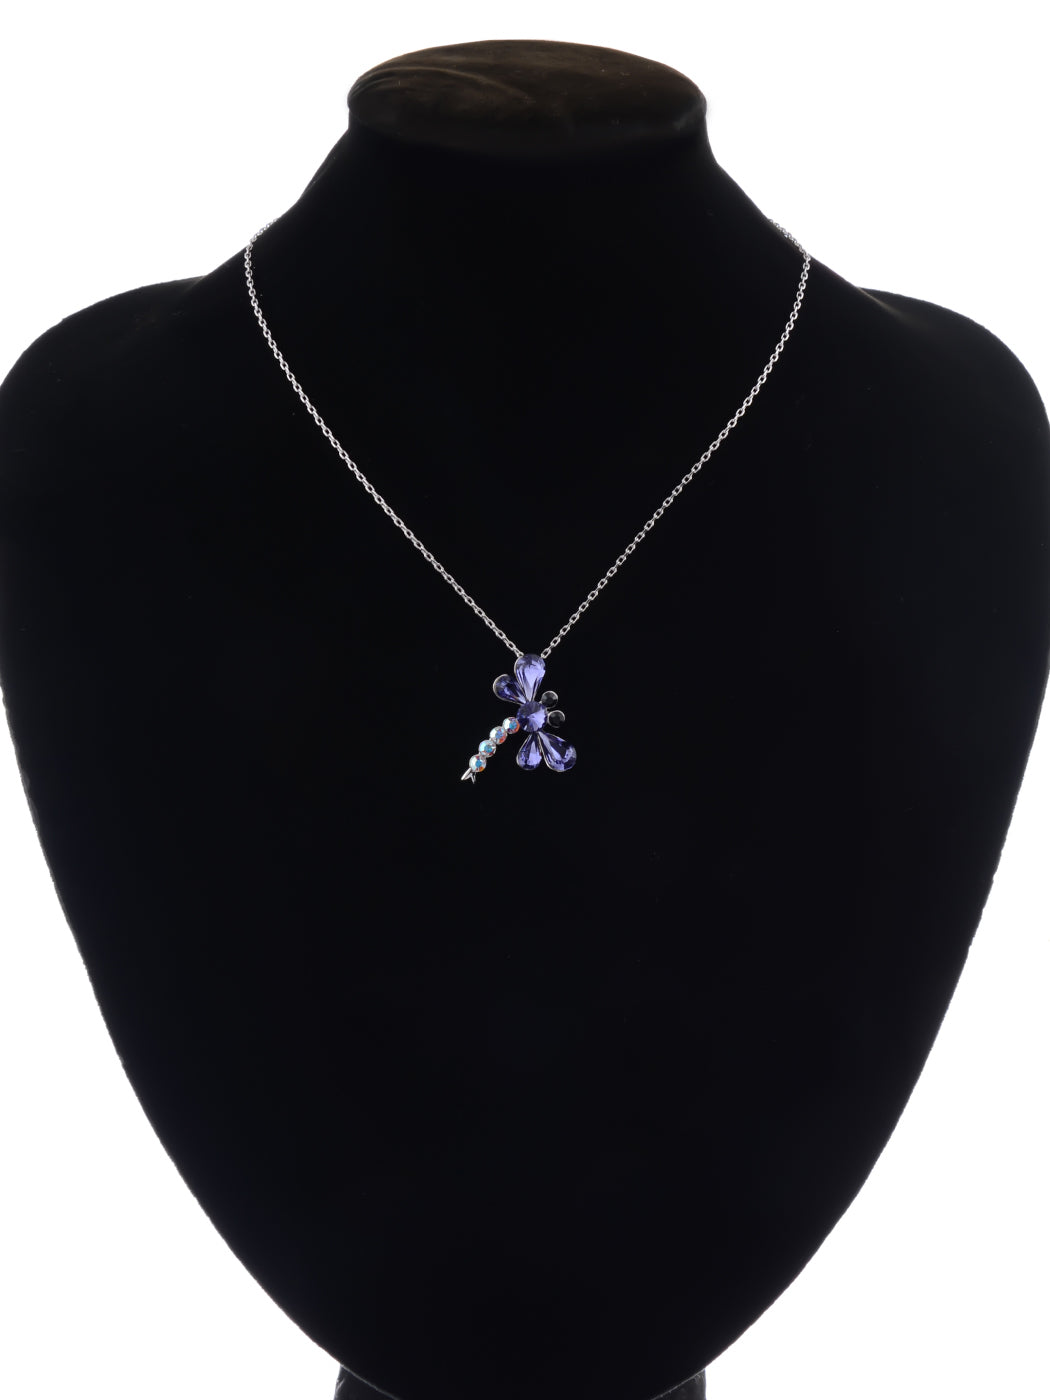 Swarovski Crystal Amethyst Purple Ab Cartoon Dragonfly Bug Pendant Necklace